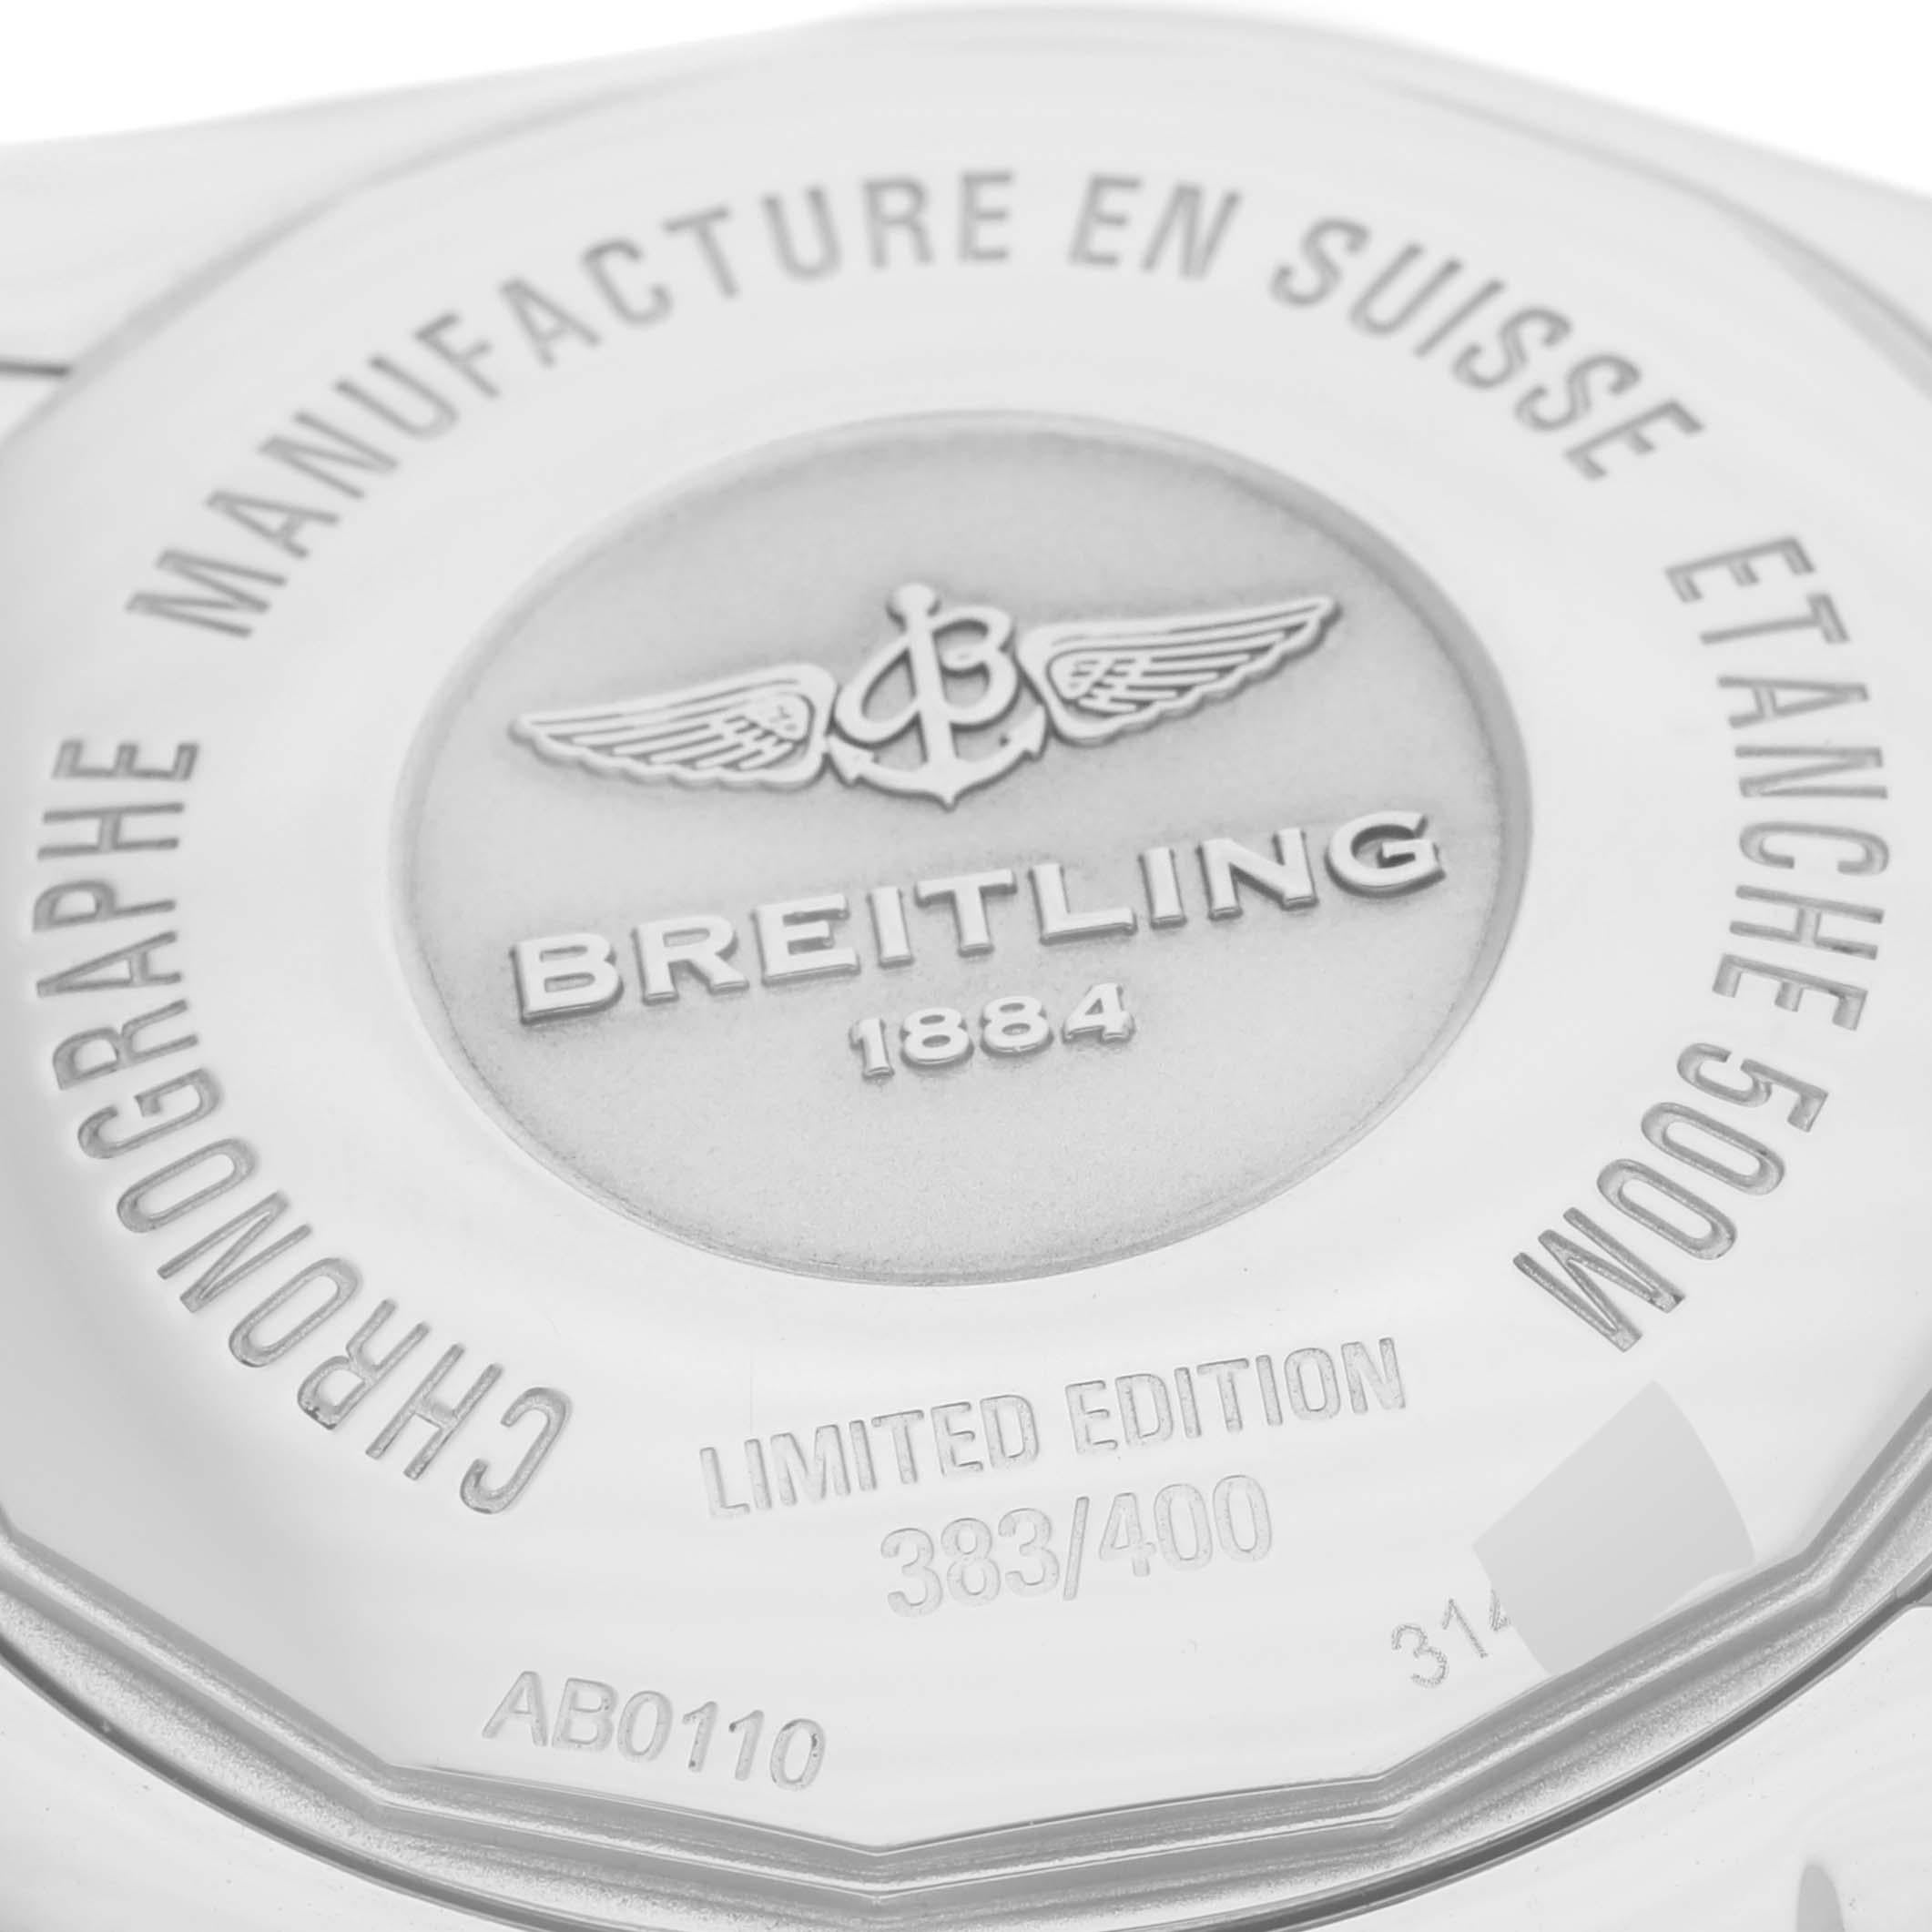 Breitling Chronomat 01 Blue Mother of Pearl Steel Mens Watch AB0110 Box Card. Mouvement automatique à remontage automatique, officiellement certifié chronomètre. Fonction chronographe. Boîtier en acier inoxydable de 43.5 mm de diamètre avec couronne